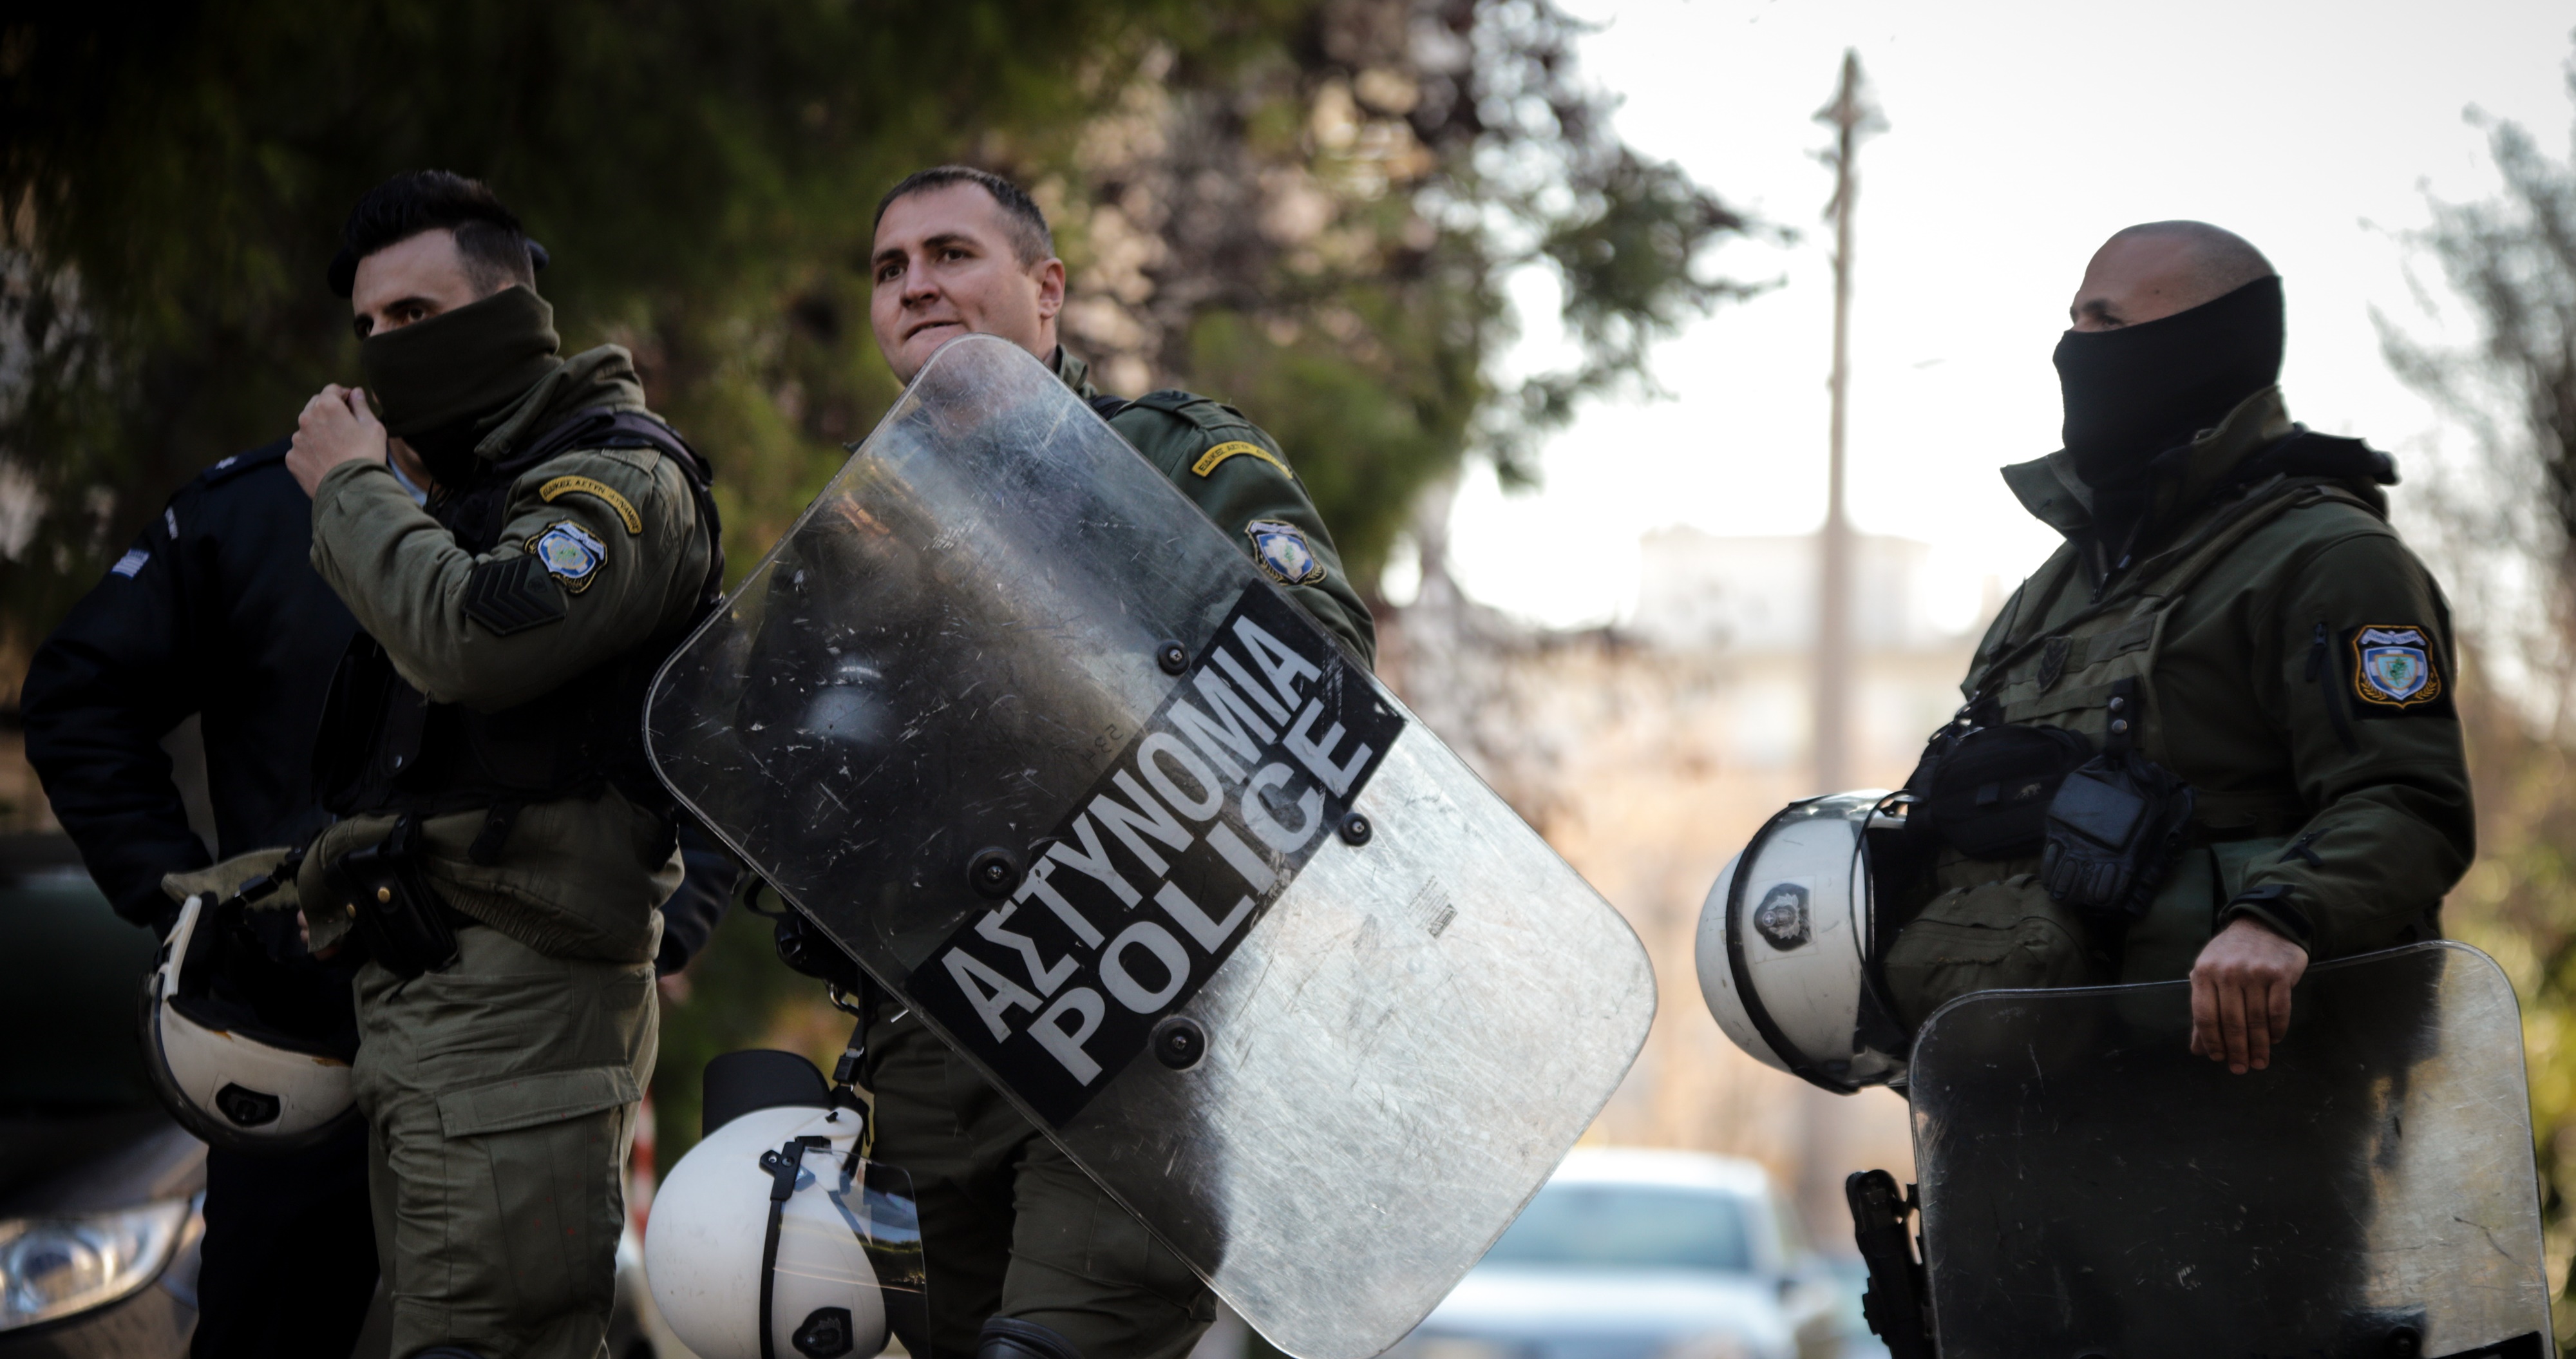 Αστυνομικός Σύνταγμα – ΣΥΡΙΖΑ: Η στιγμή που ο αξιωματικός εμποδίζει τη σύλληψη διαδηλωτή